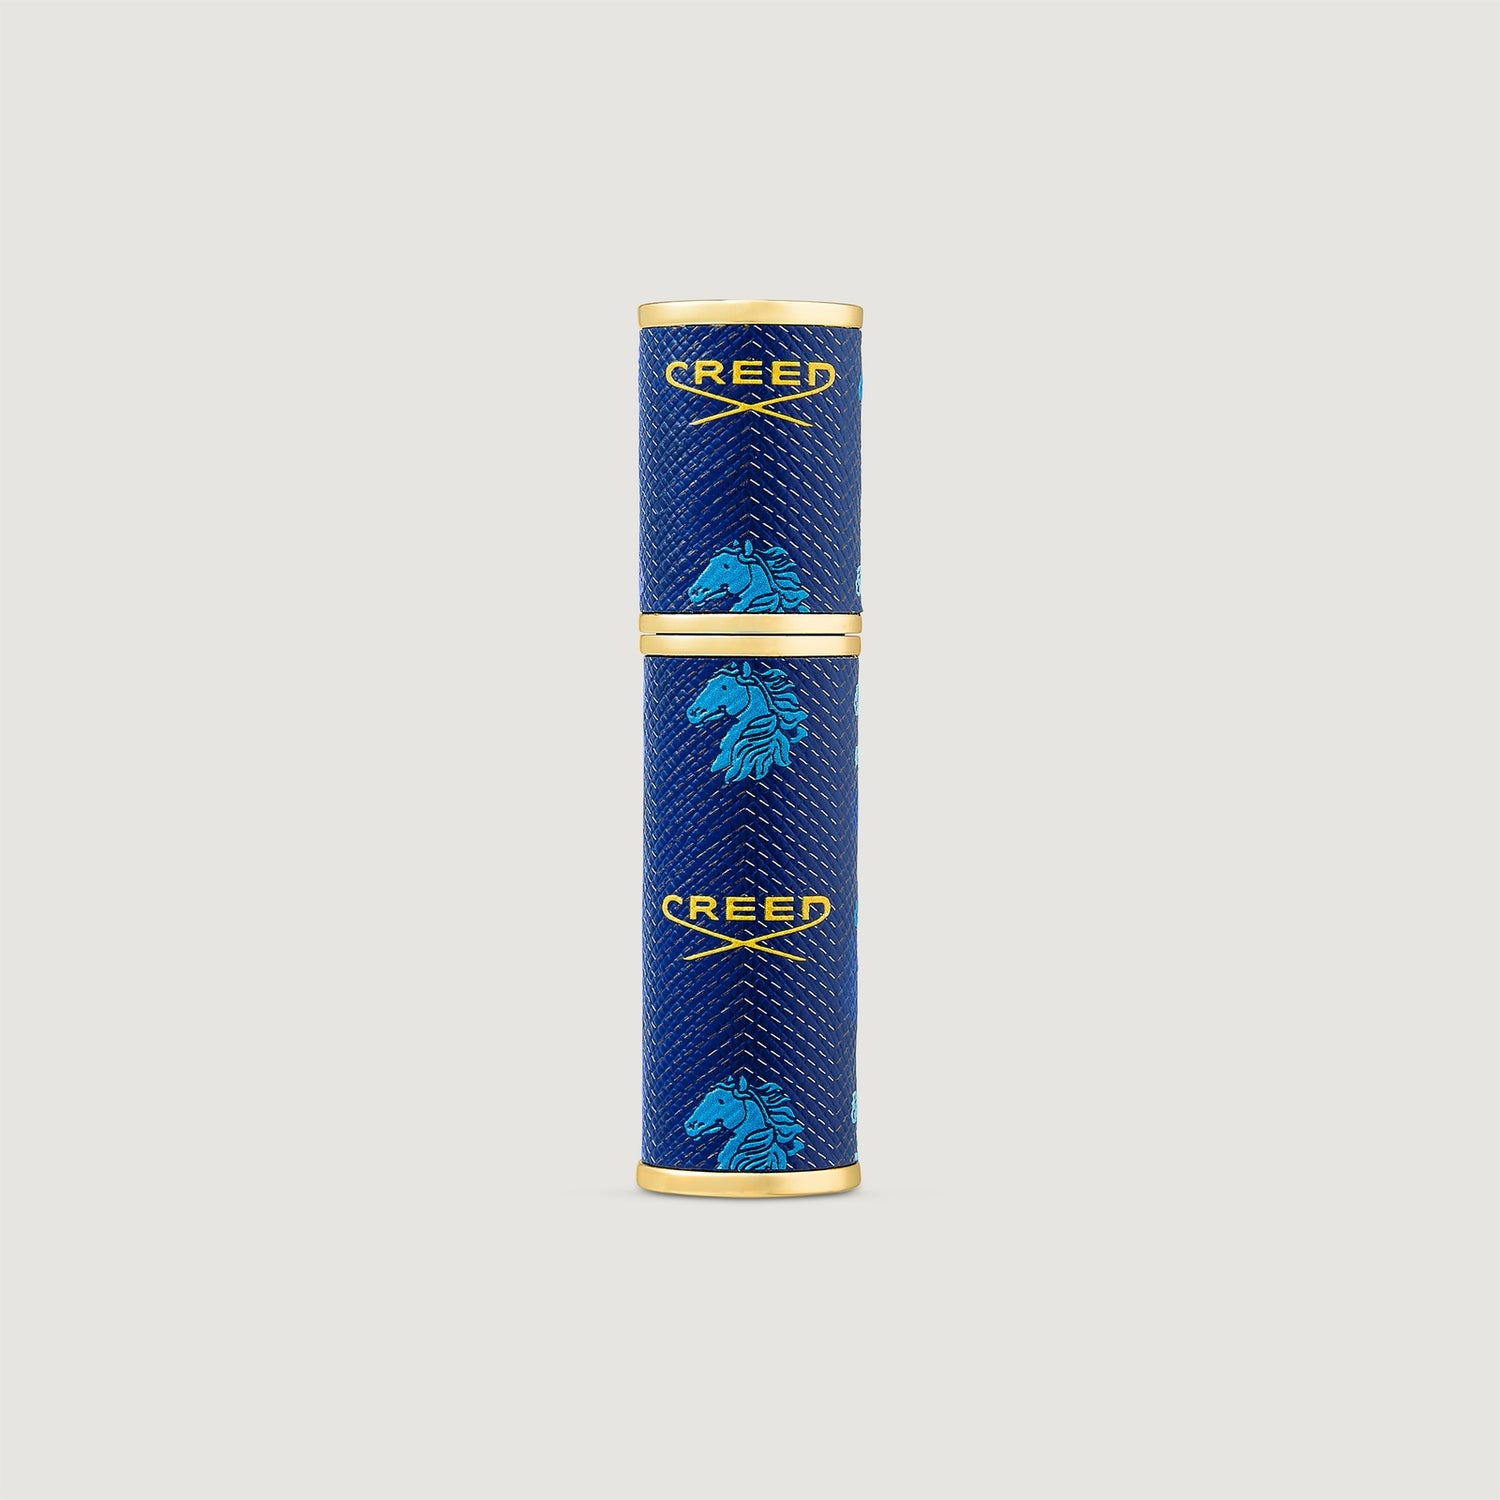 Refillable Travel Perfume Atomiser 5ml - Blue